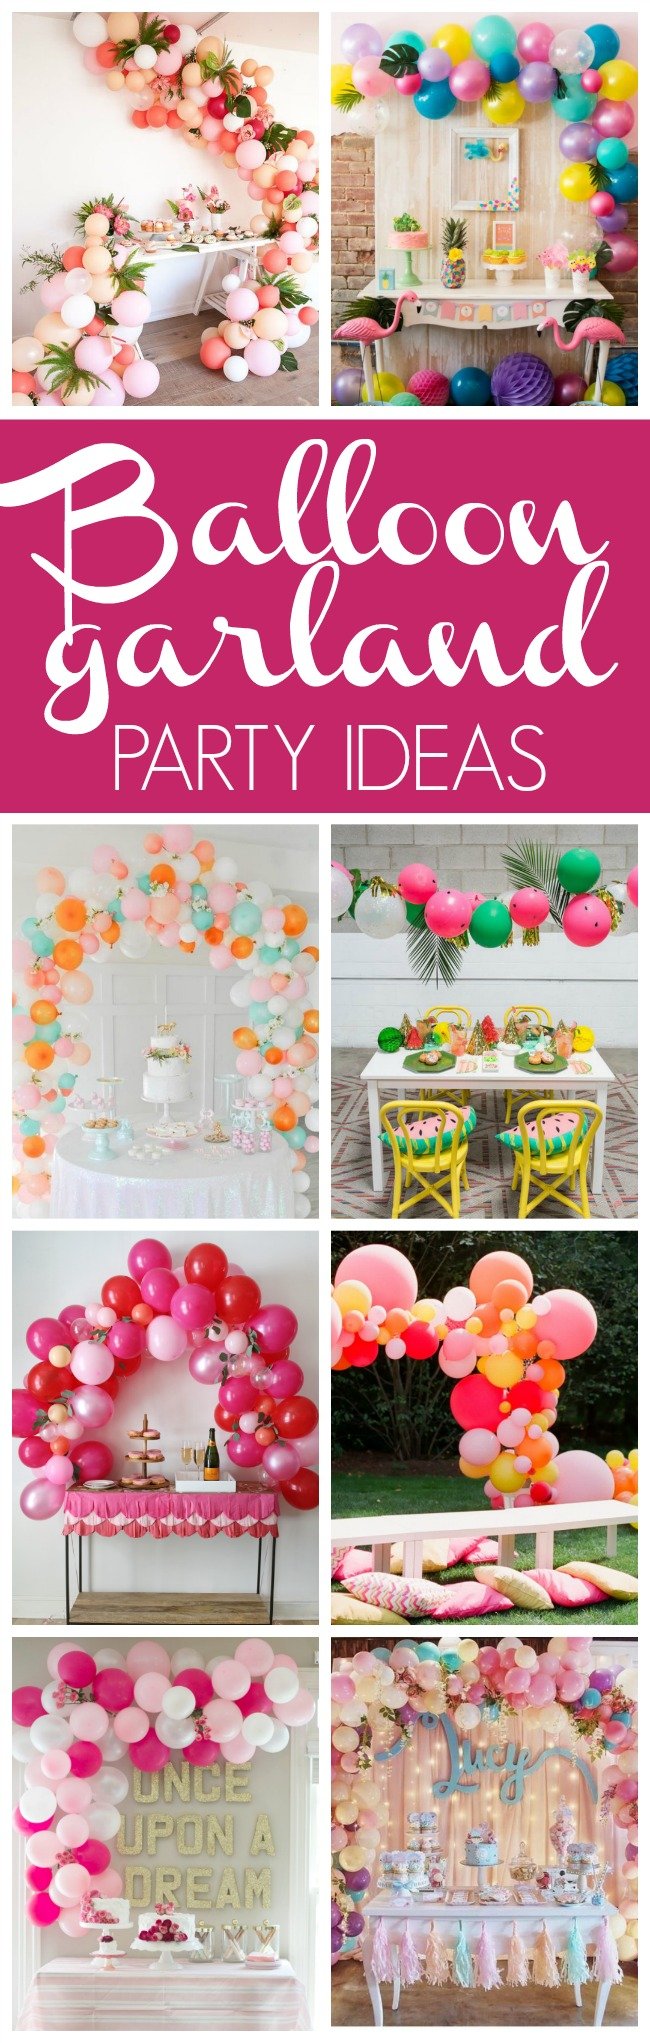 16 Balloon Garland Party Ideas